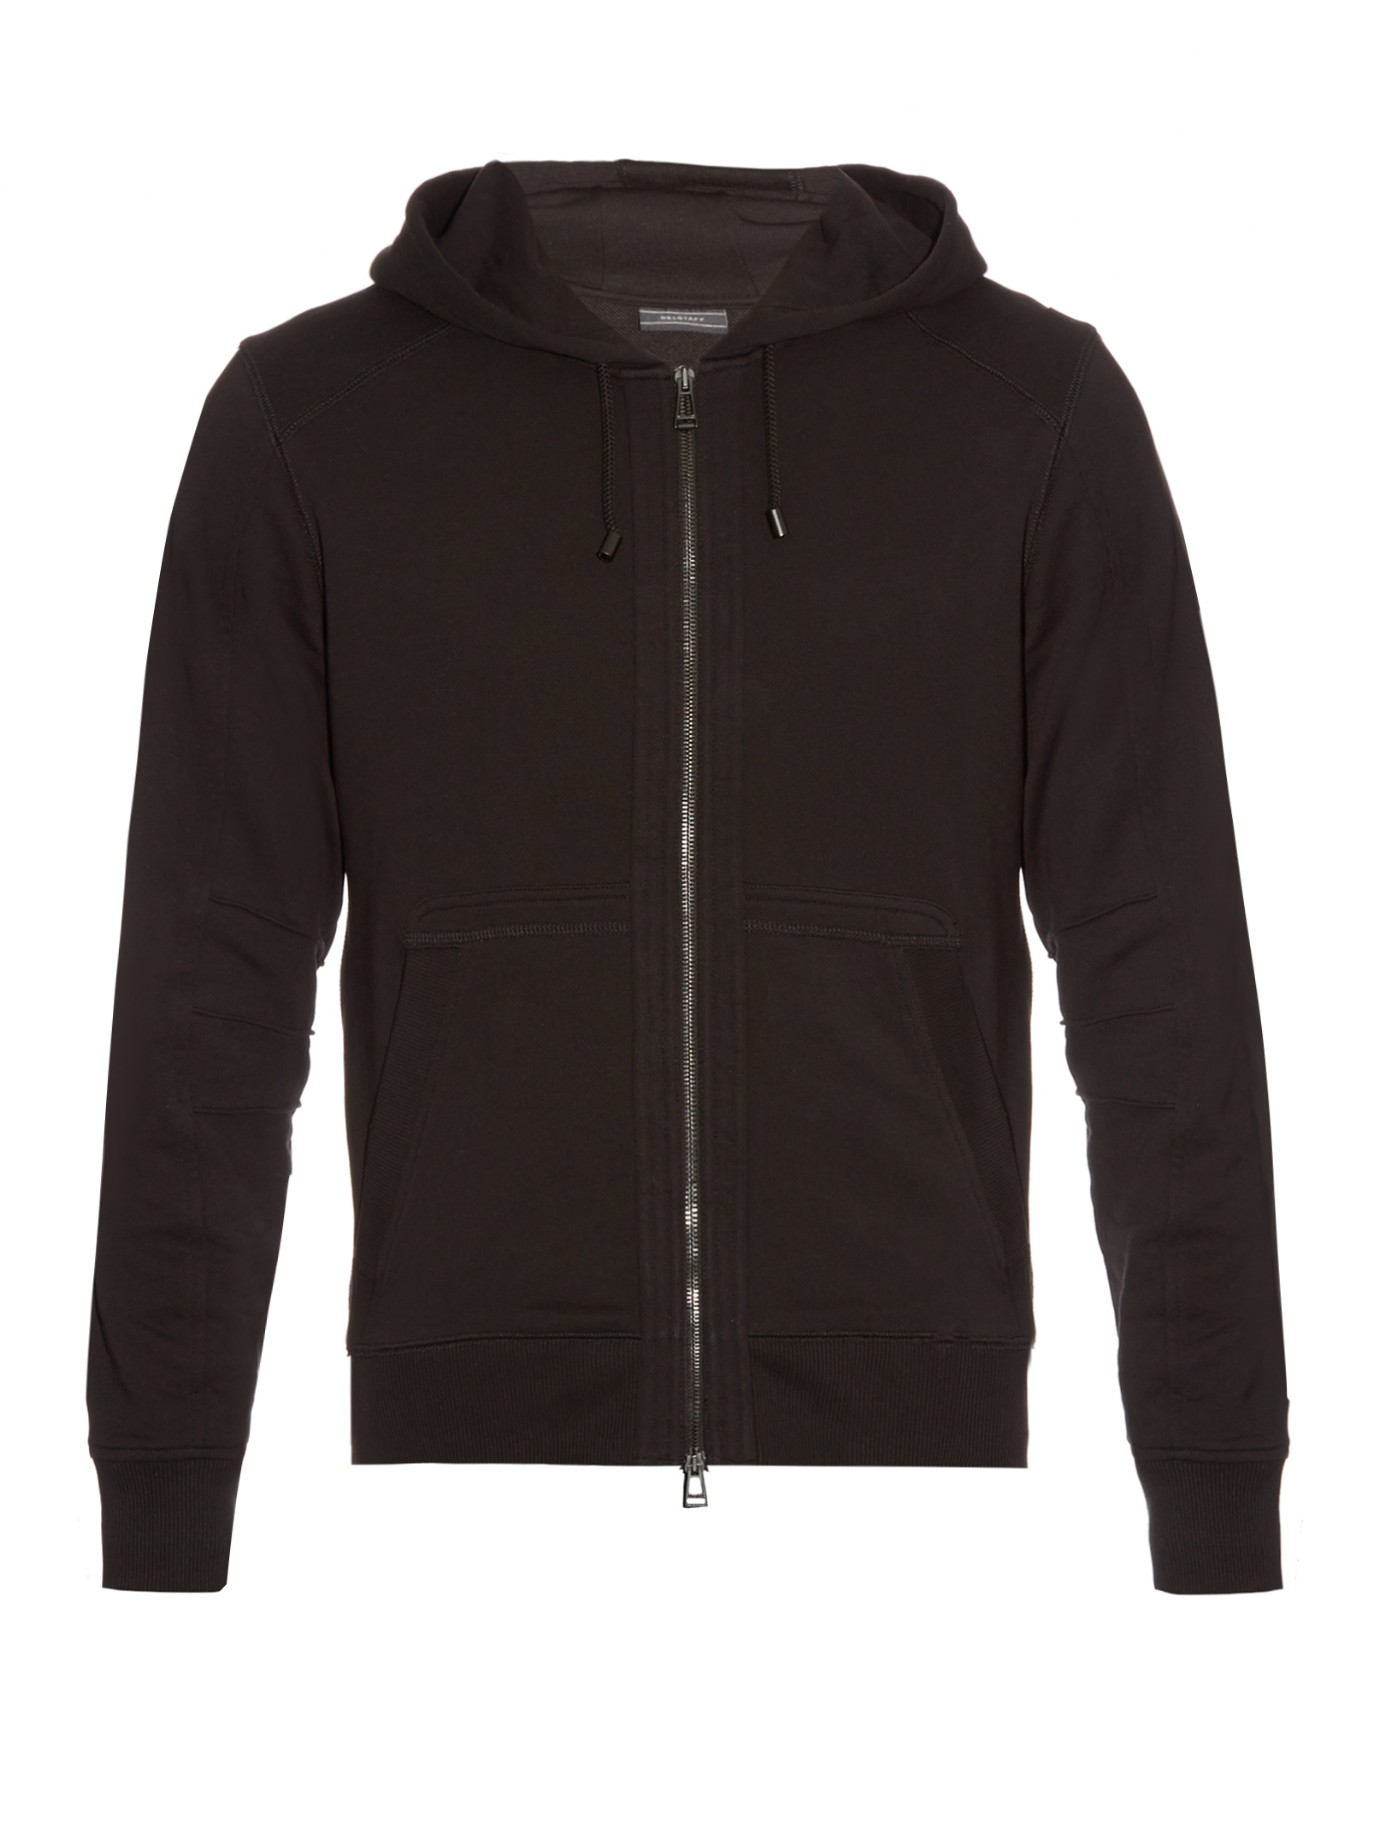 Belstaff Fleming Zip-front Hooded Sweatshirt in Black for Men - Lyst